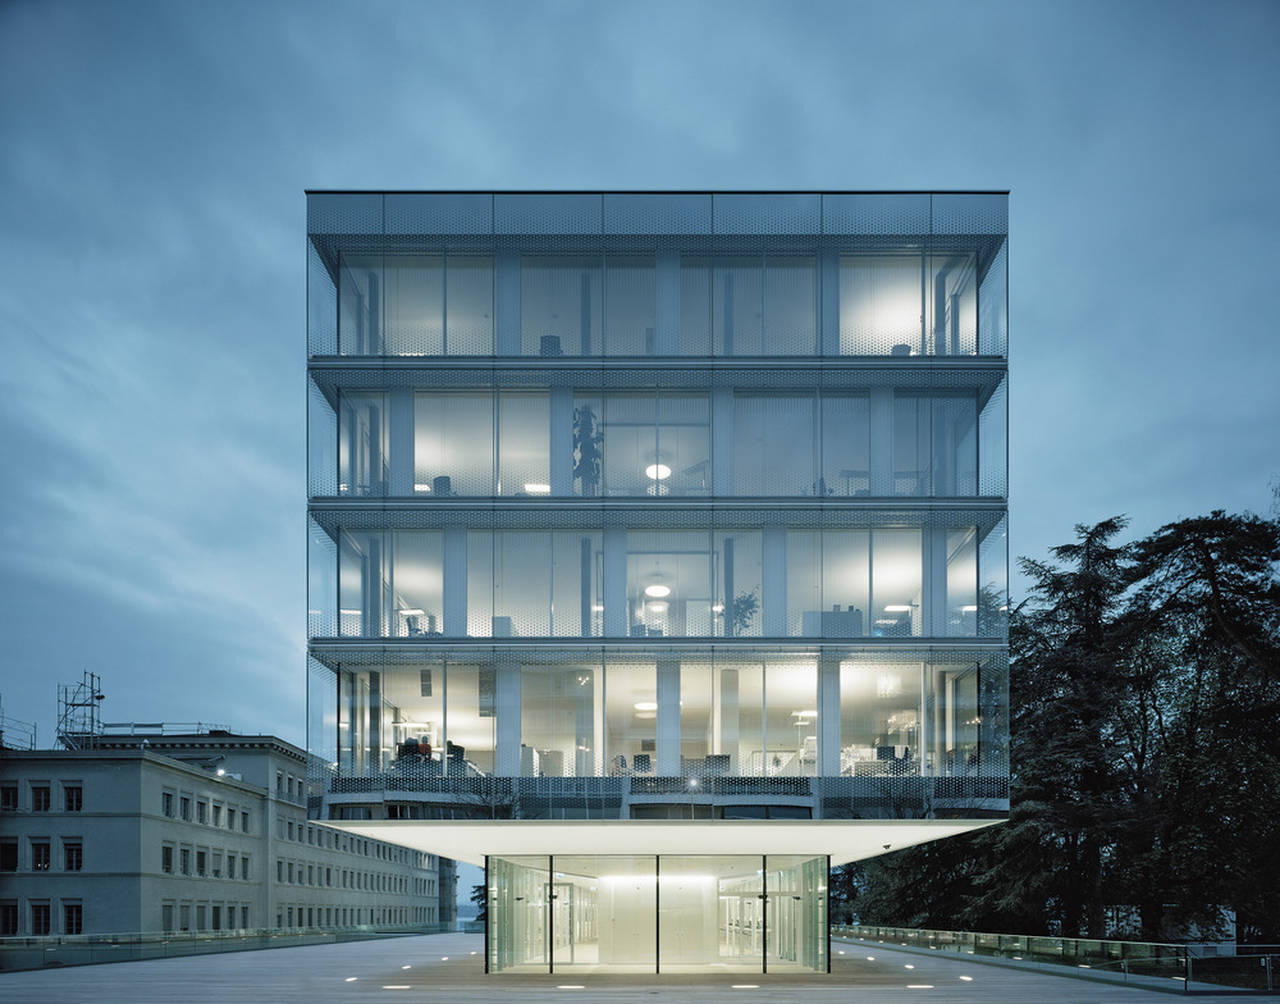 Crystalline Volume World Trade Organization in Genève, Switzerland by Wittfoht Architekten : Photo credit © Brigida González